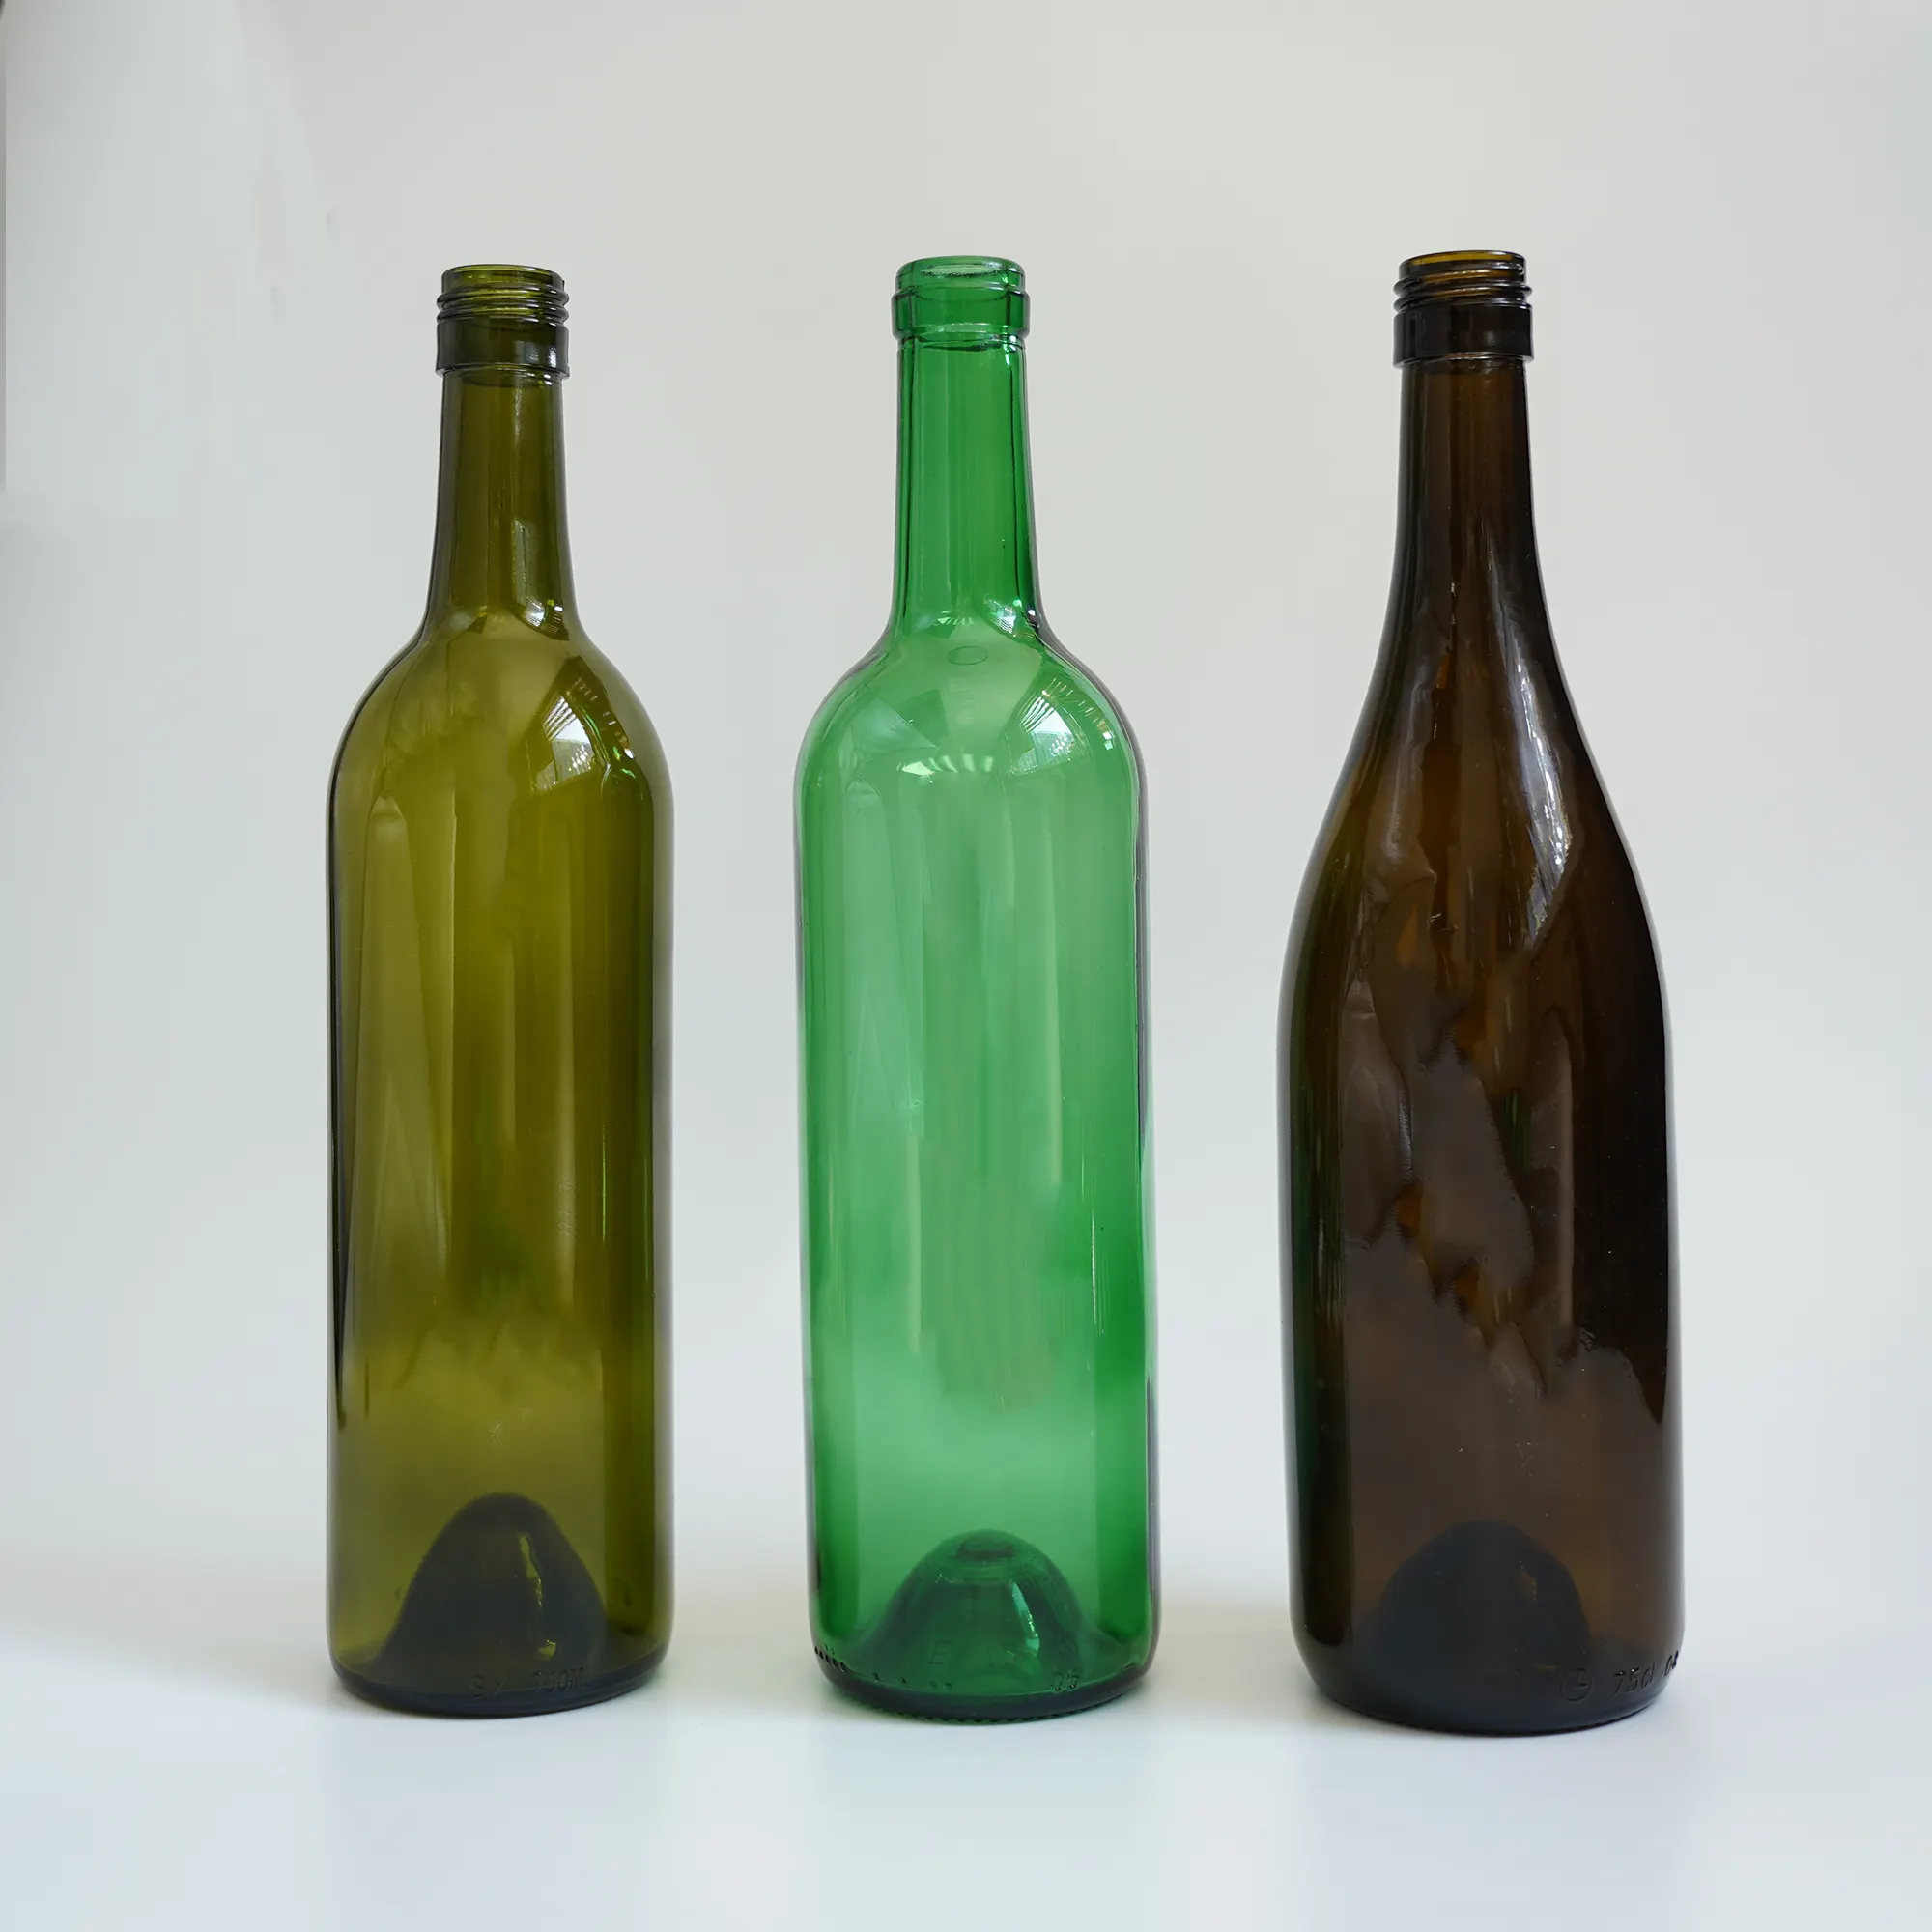 בקבוק זכוכית יין פרימיום ירוק בורדו 750 מ""ל ברמה גבוהה עם חריטה בהתאמה אישית של פקק למשקאות